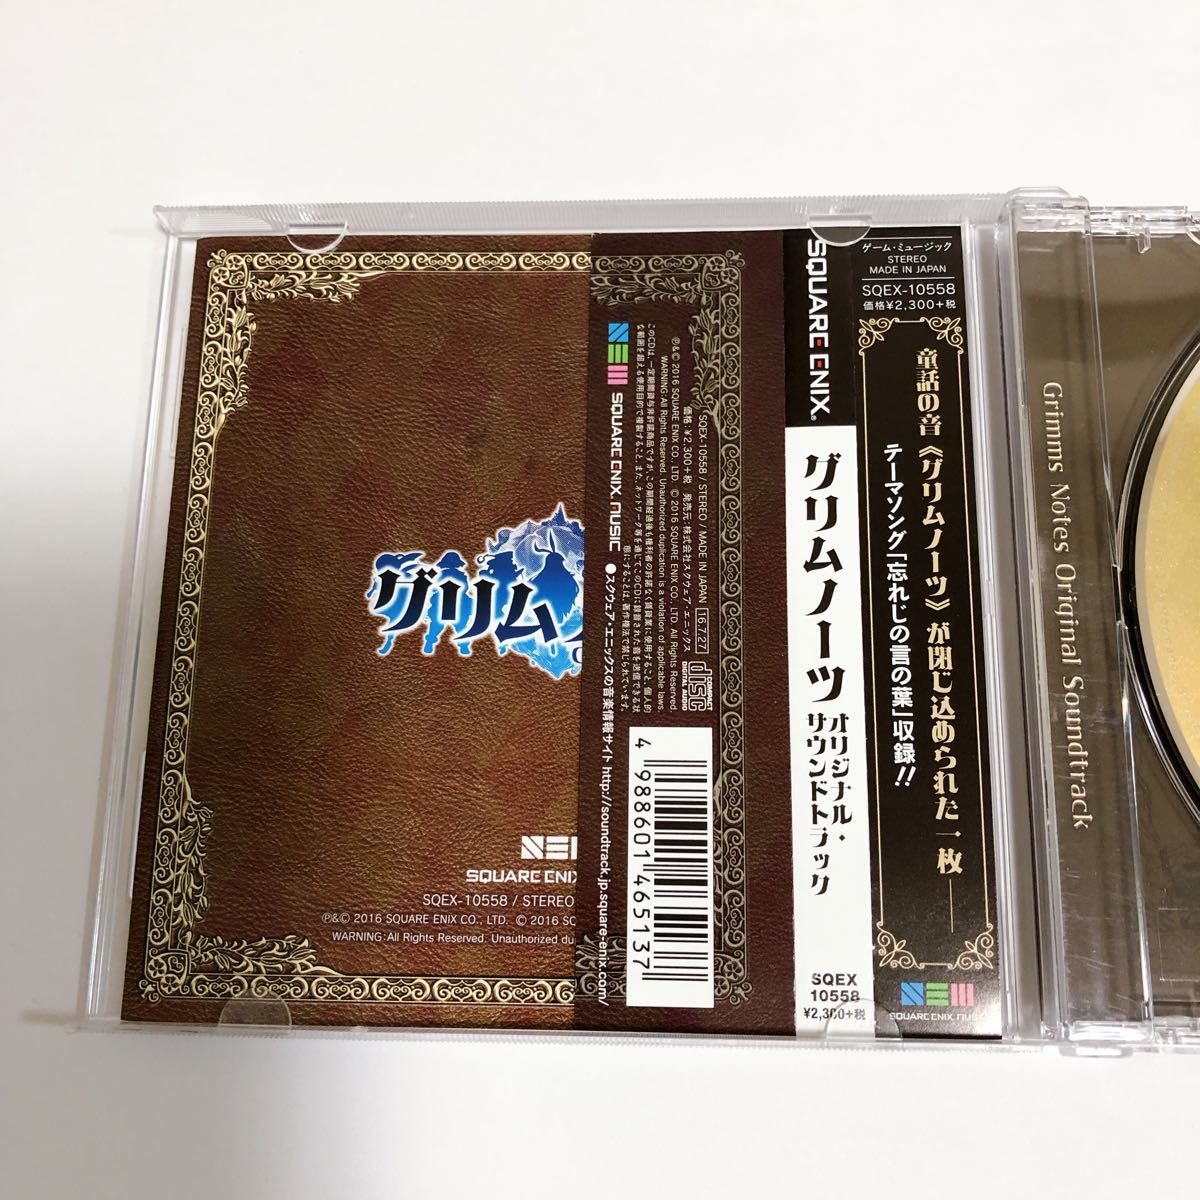 グリムノーツ オリジナル・サウンドトラック CD 未来古代楽団 サントラ Original Soundtrack